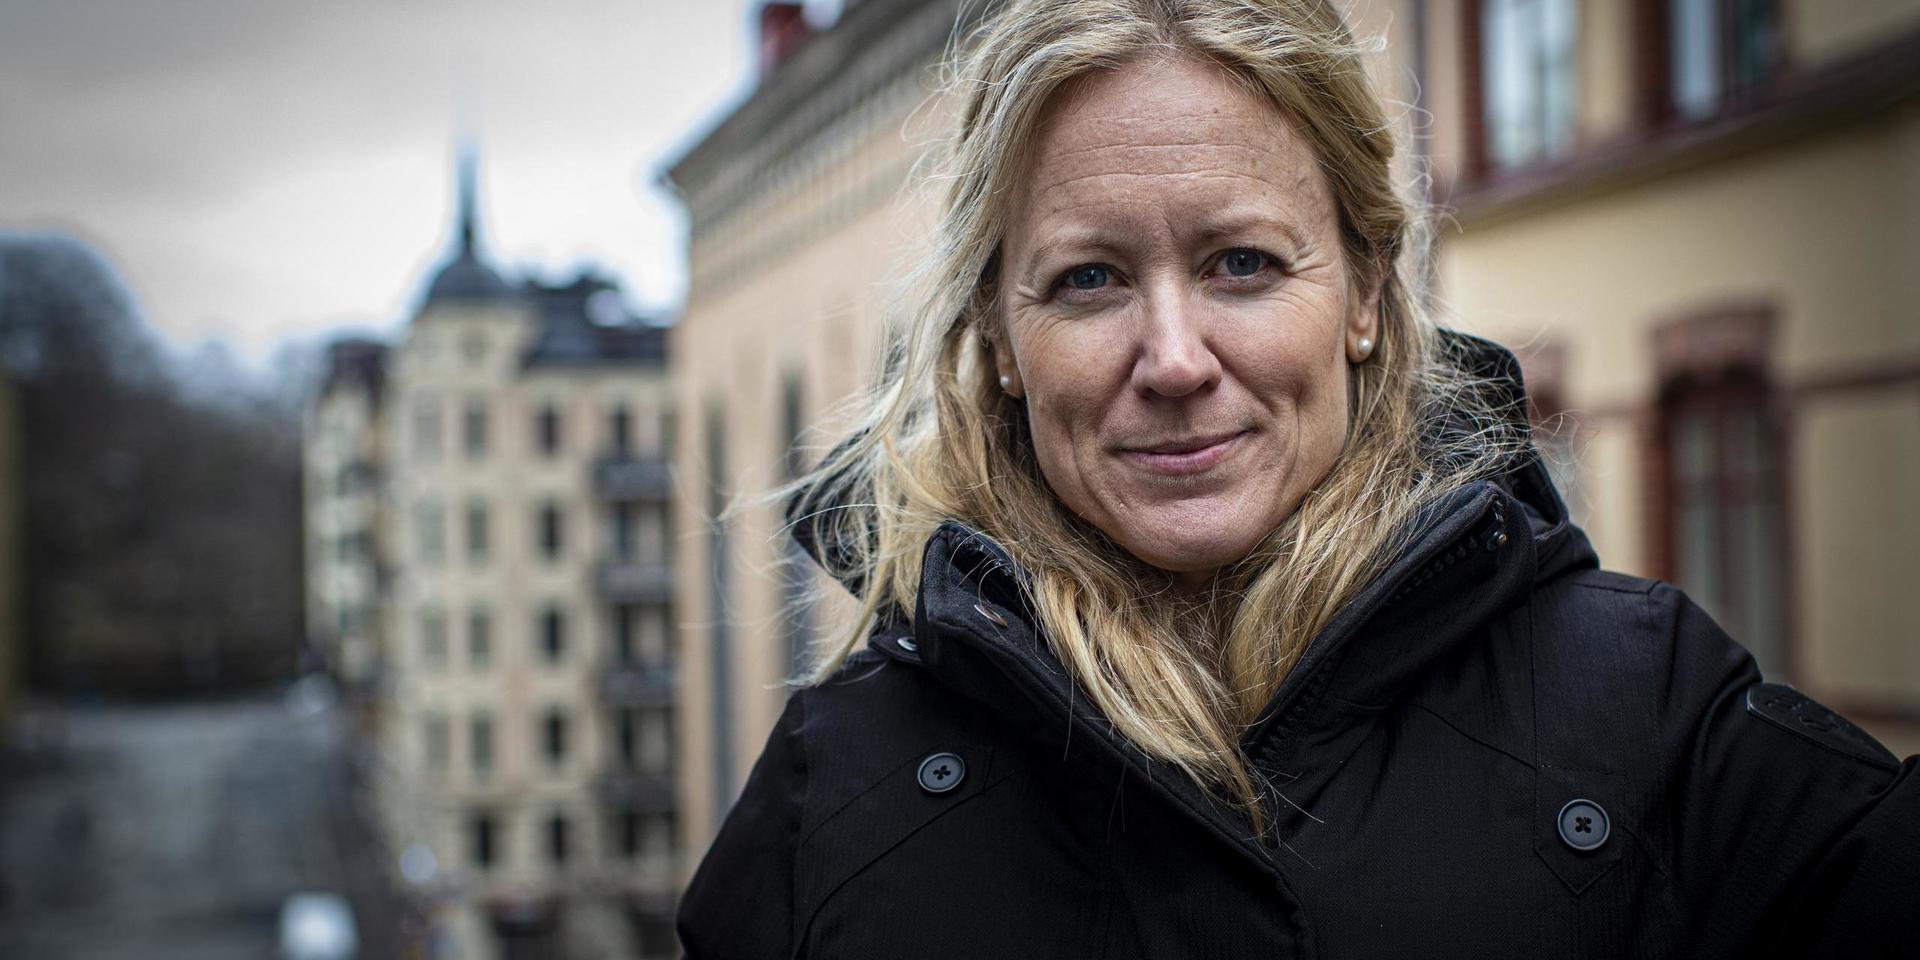 Kristine Rygge är vaccinationssamordnare i Västra Götaland.